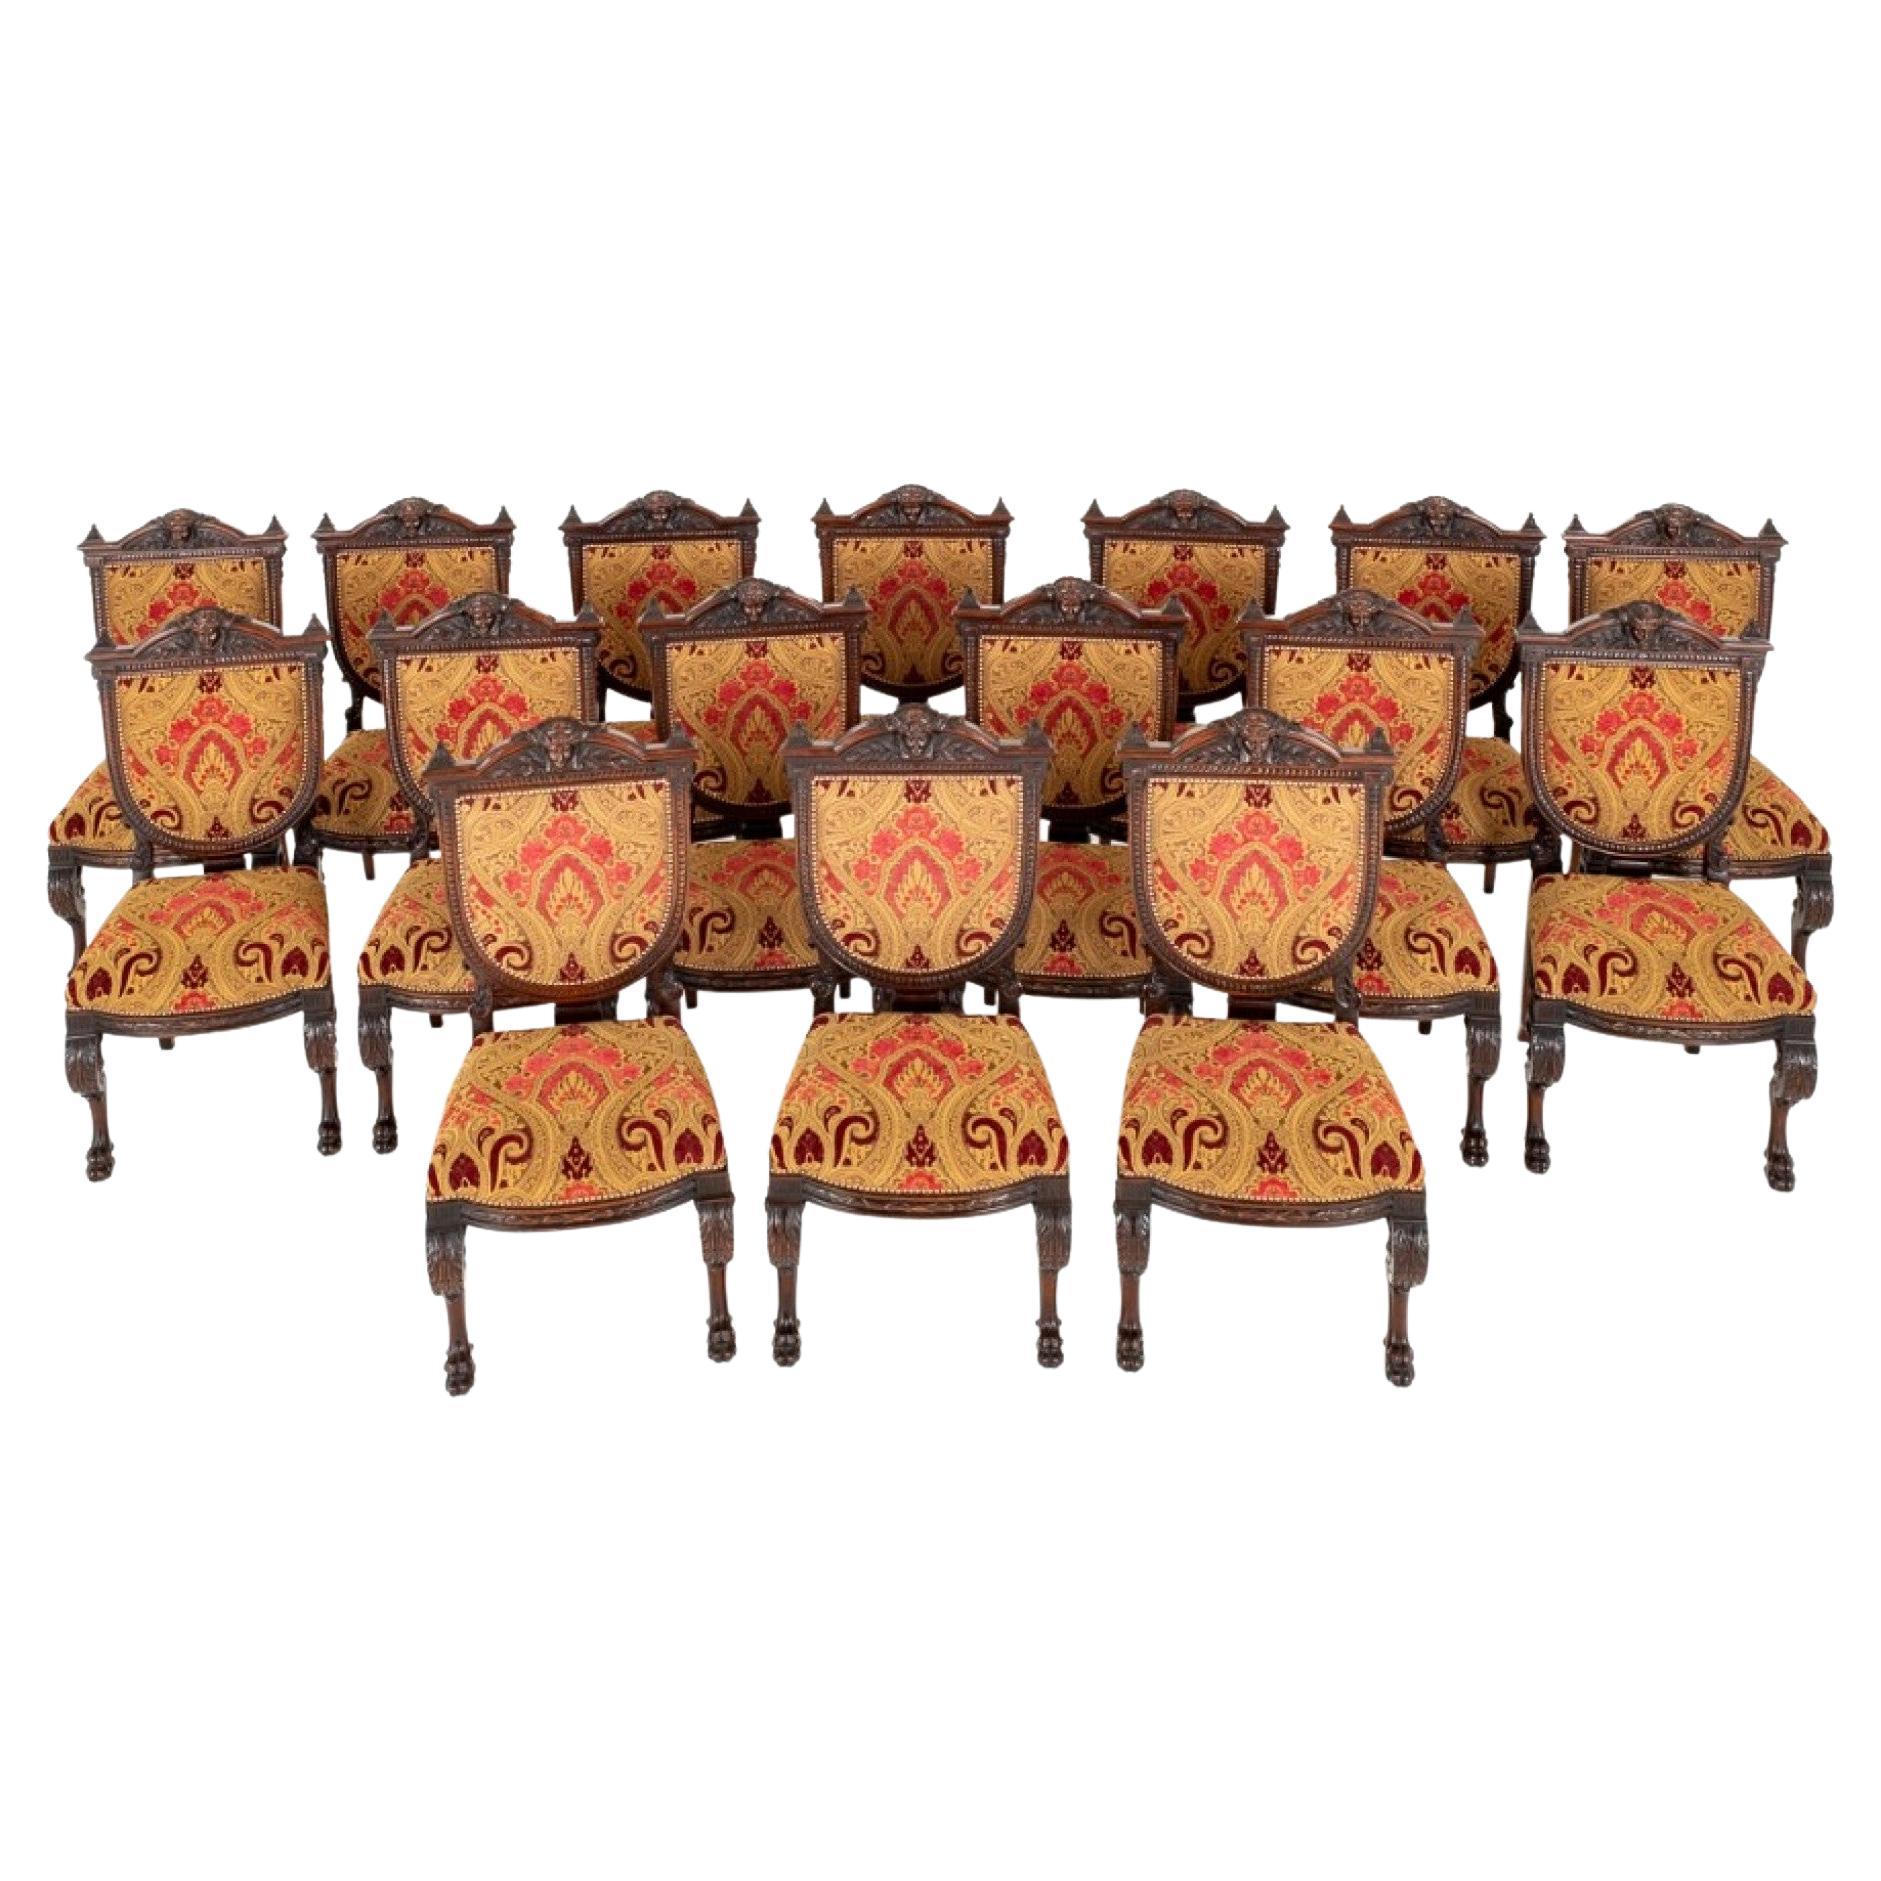 Satz Renaissance-Esszimmerstühle 16 geschnitzte Stühle